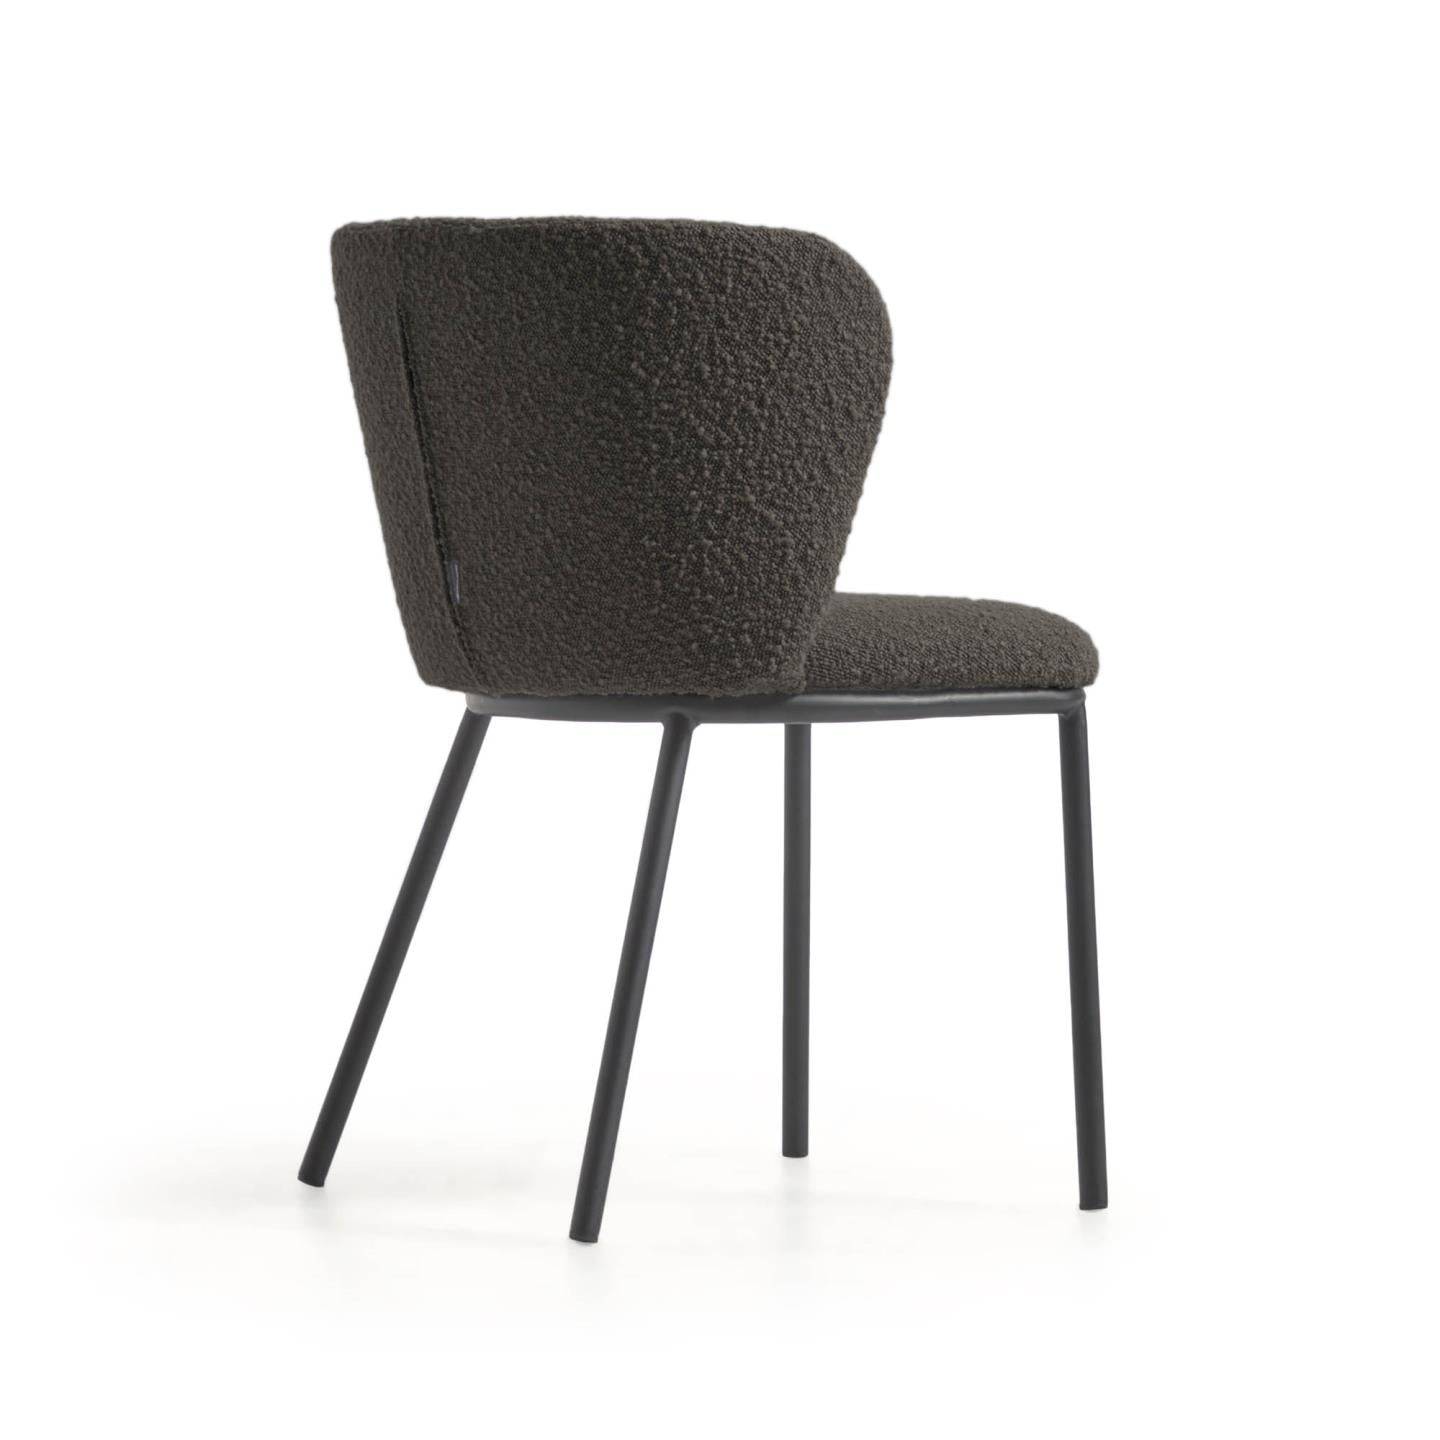 Ciselia - Lot de 2 chaises en tissu bouclette et métal - Drawer